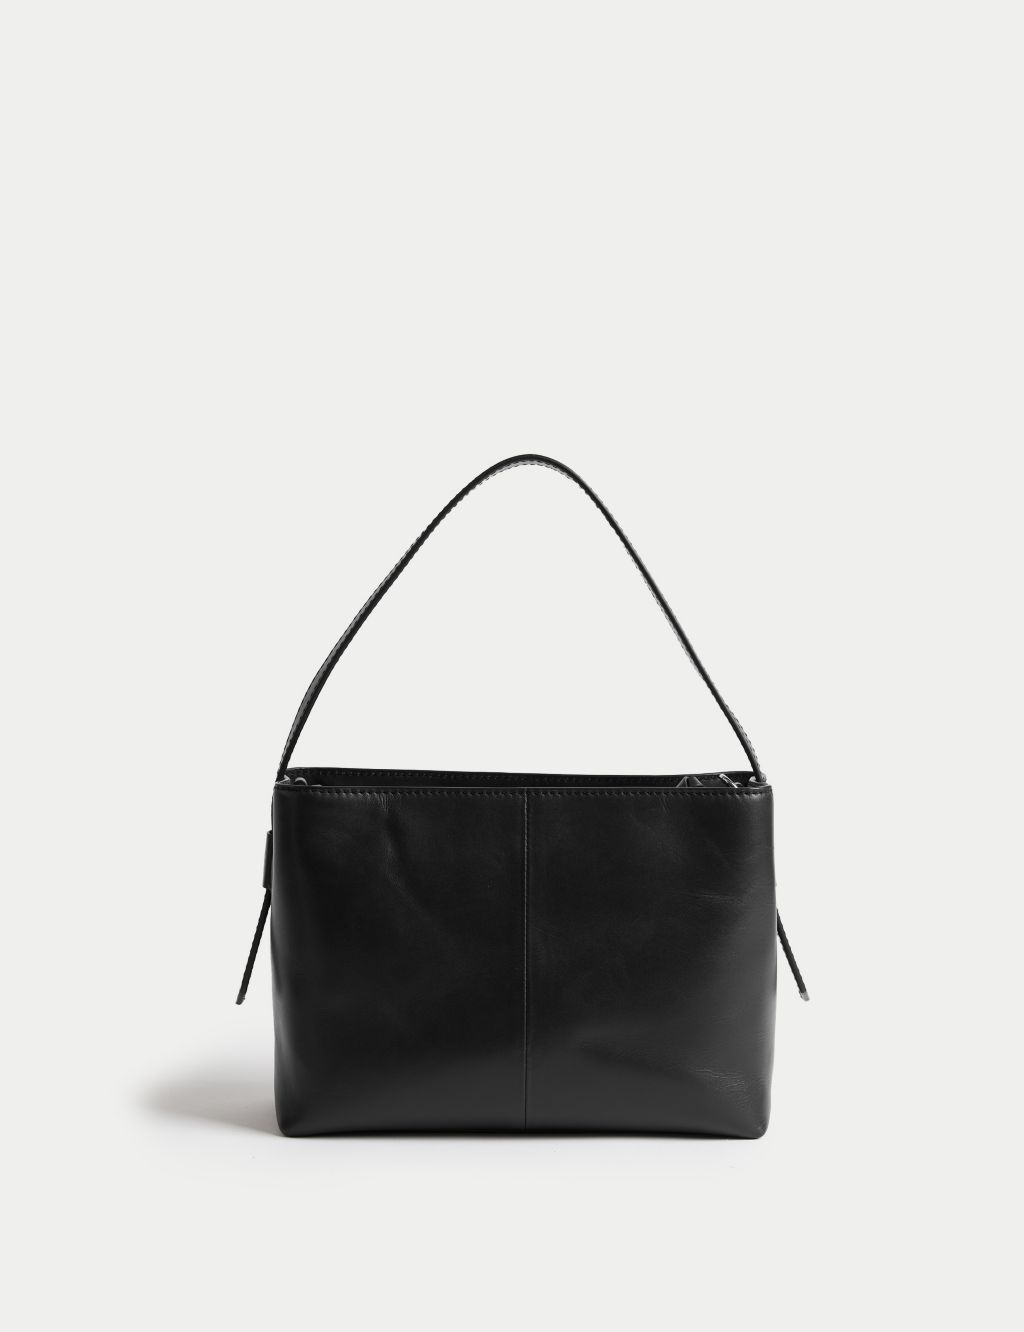 Leather Top Handle Shoulder Bag image 3